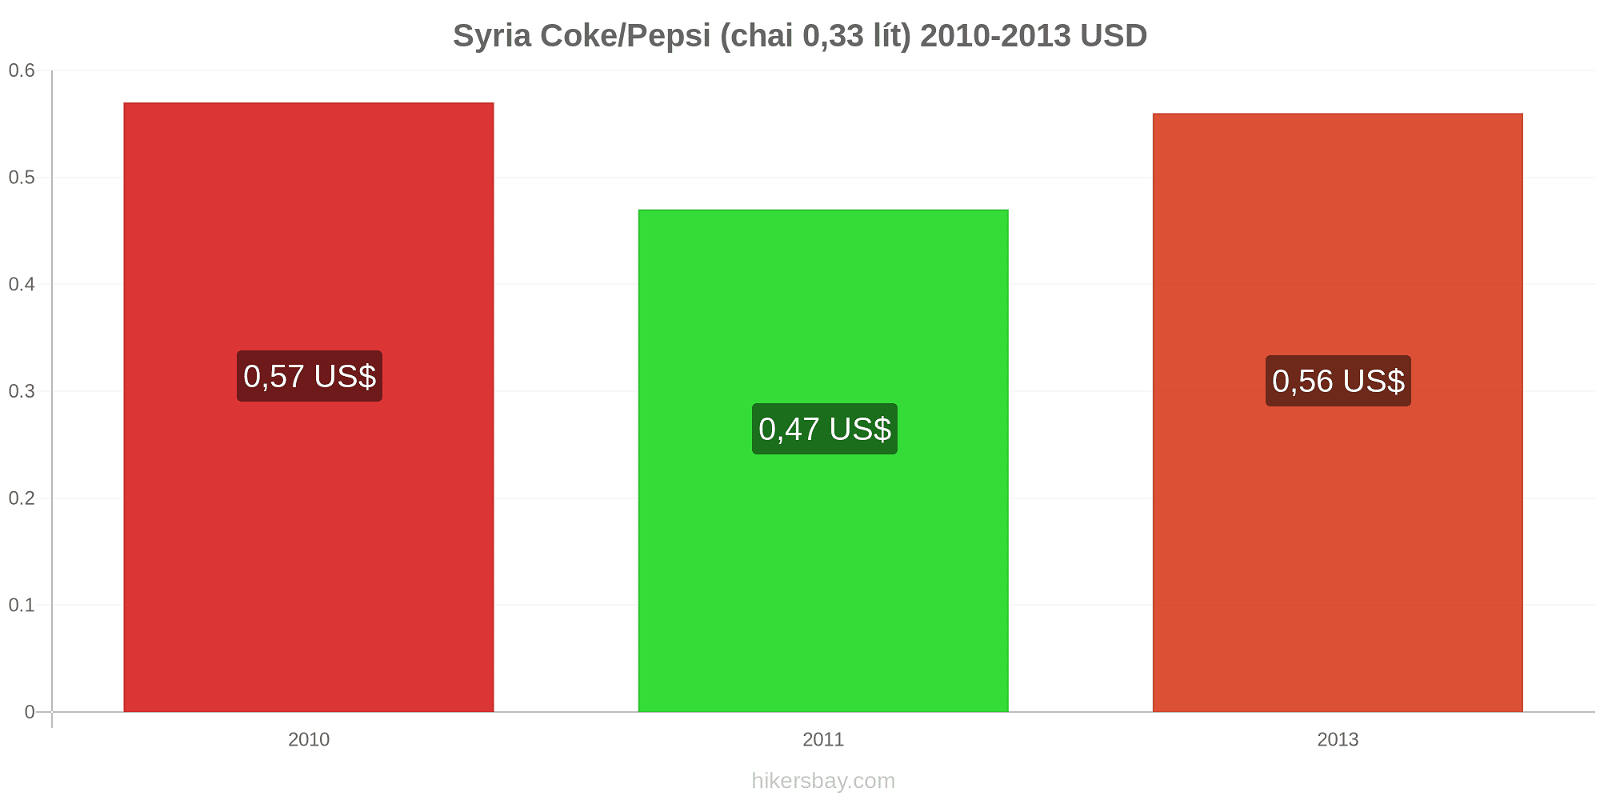 Syria thay đổi giá cả Coca-Cola/Pepsi (chai 0.33 lít) hikersbay.com